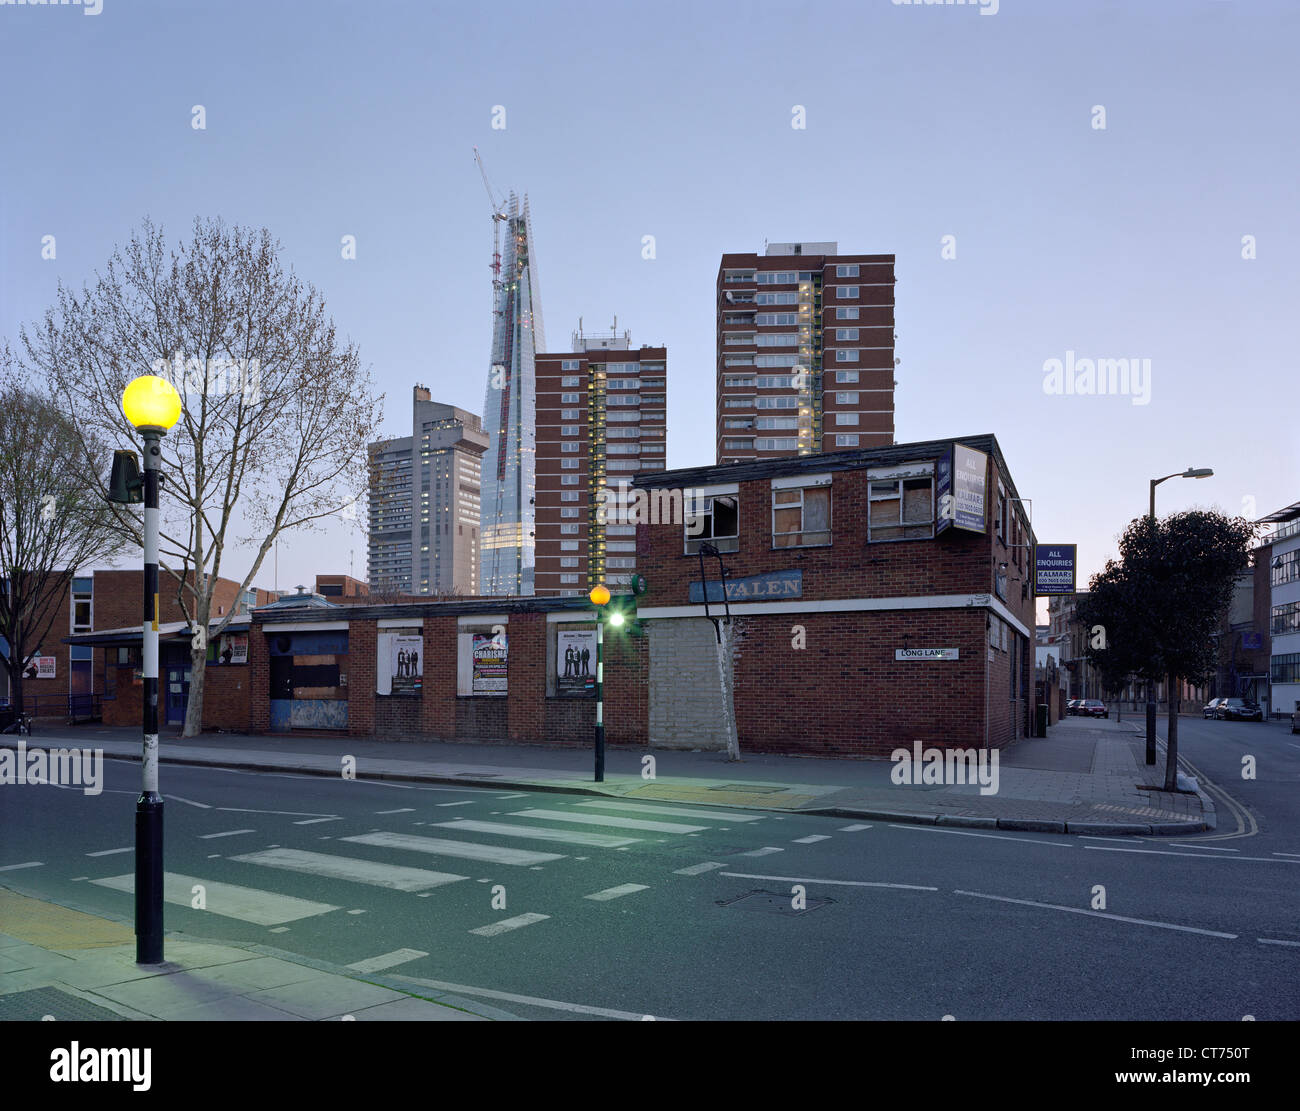 Shard, Londra, Regno Unito. Architetto: Renzo Piano Building Workshop, 2012. Alba vista da Long Lane che mostra il contesto urbano. Foto Stock